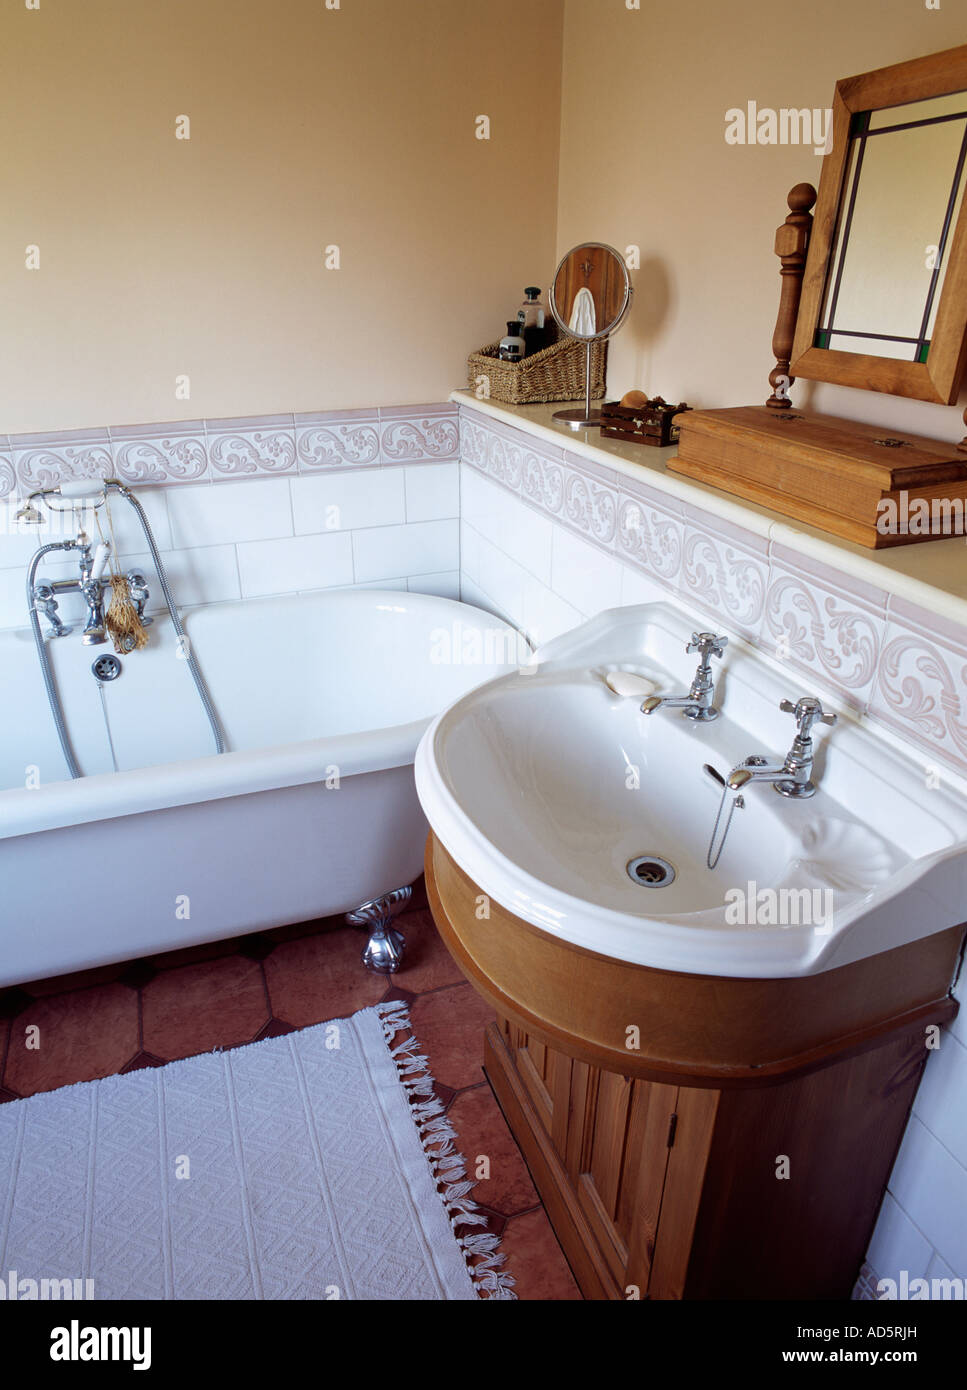 White disegno a rilievo bordo piastrellato in stanza da bagno separata con vasca bianca e vasca realizzata in legno scuro unità dello specchietto di cortesia Foto Stock